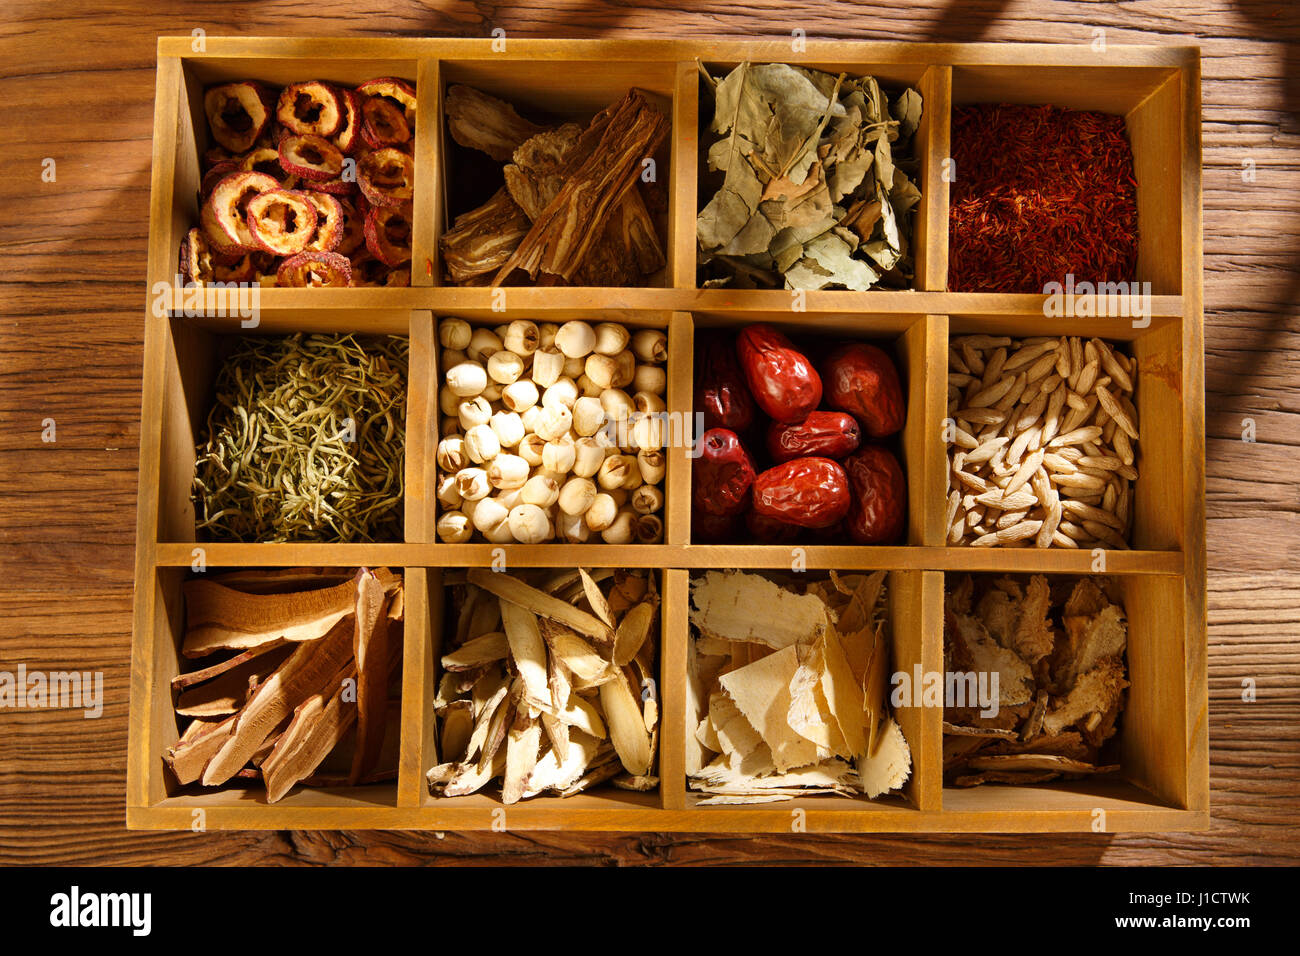 Chinese herbal medicine Stock Photo